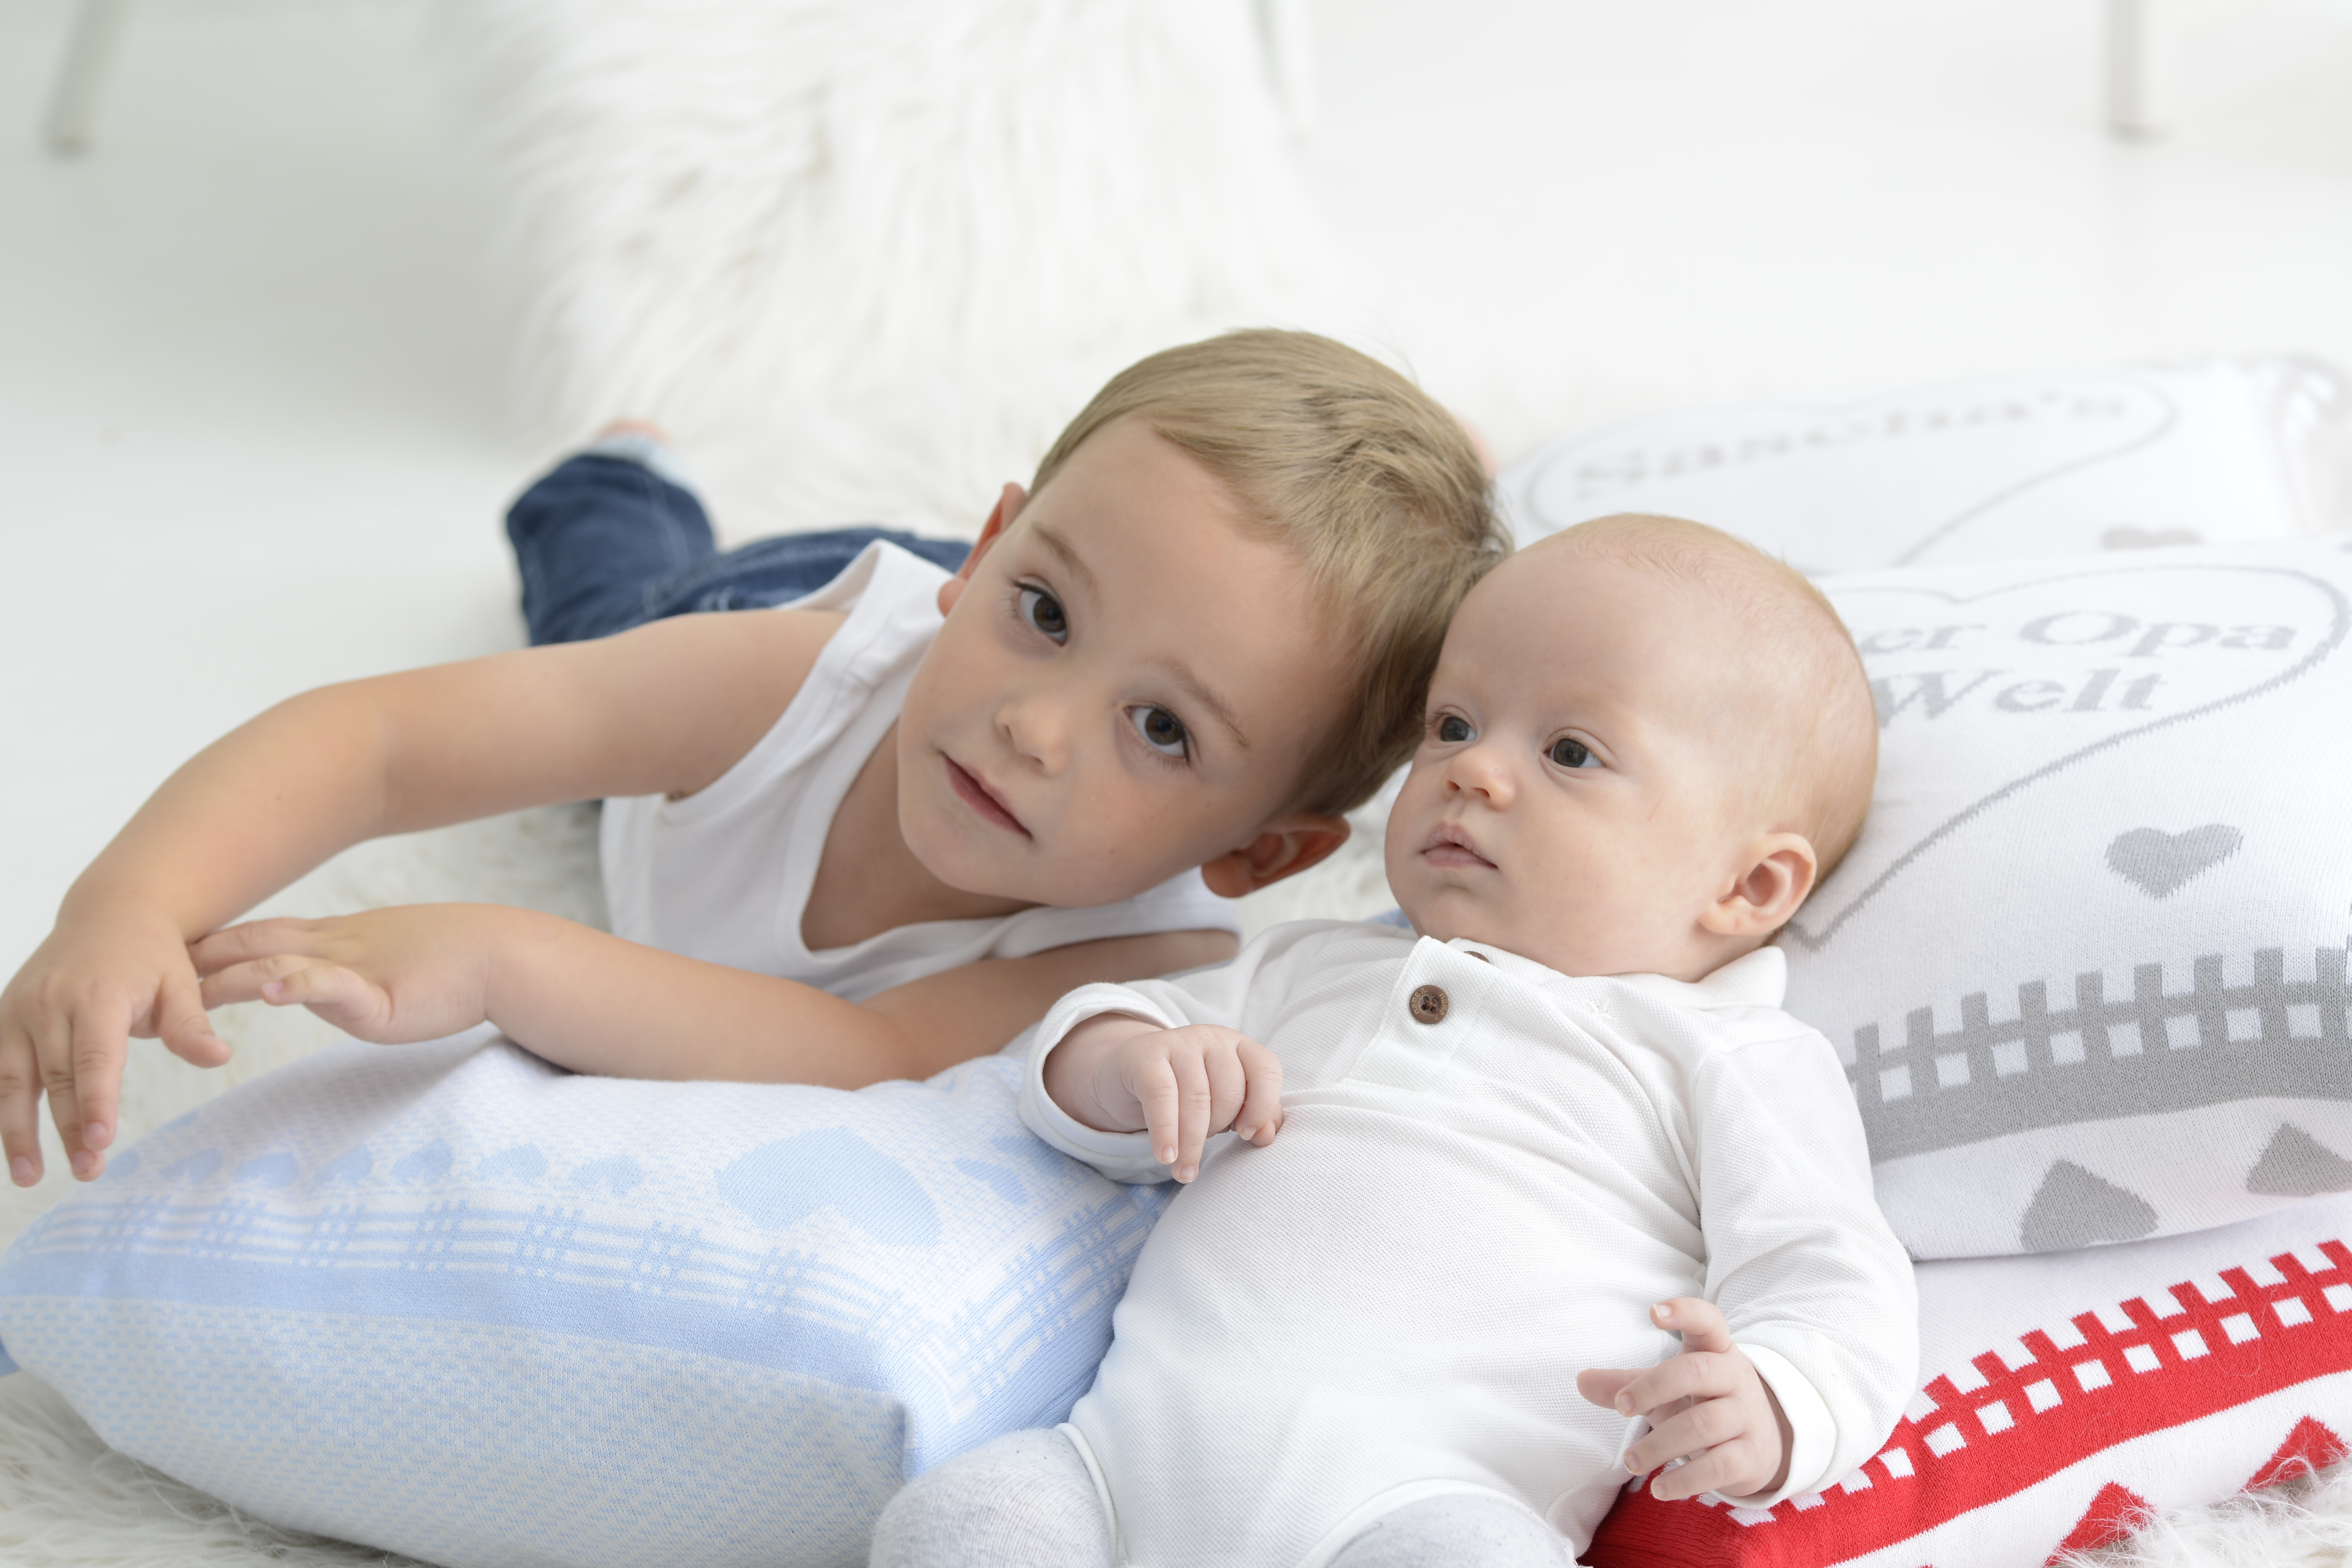 Blonder Junge schaut in die Kamera, neben kleinem Baby in weißem Strampelanzuh. Sie liegen auf personalisierten Kissen in blau und rot.